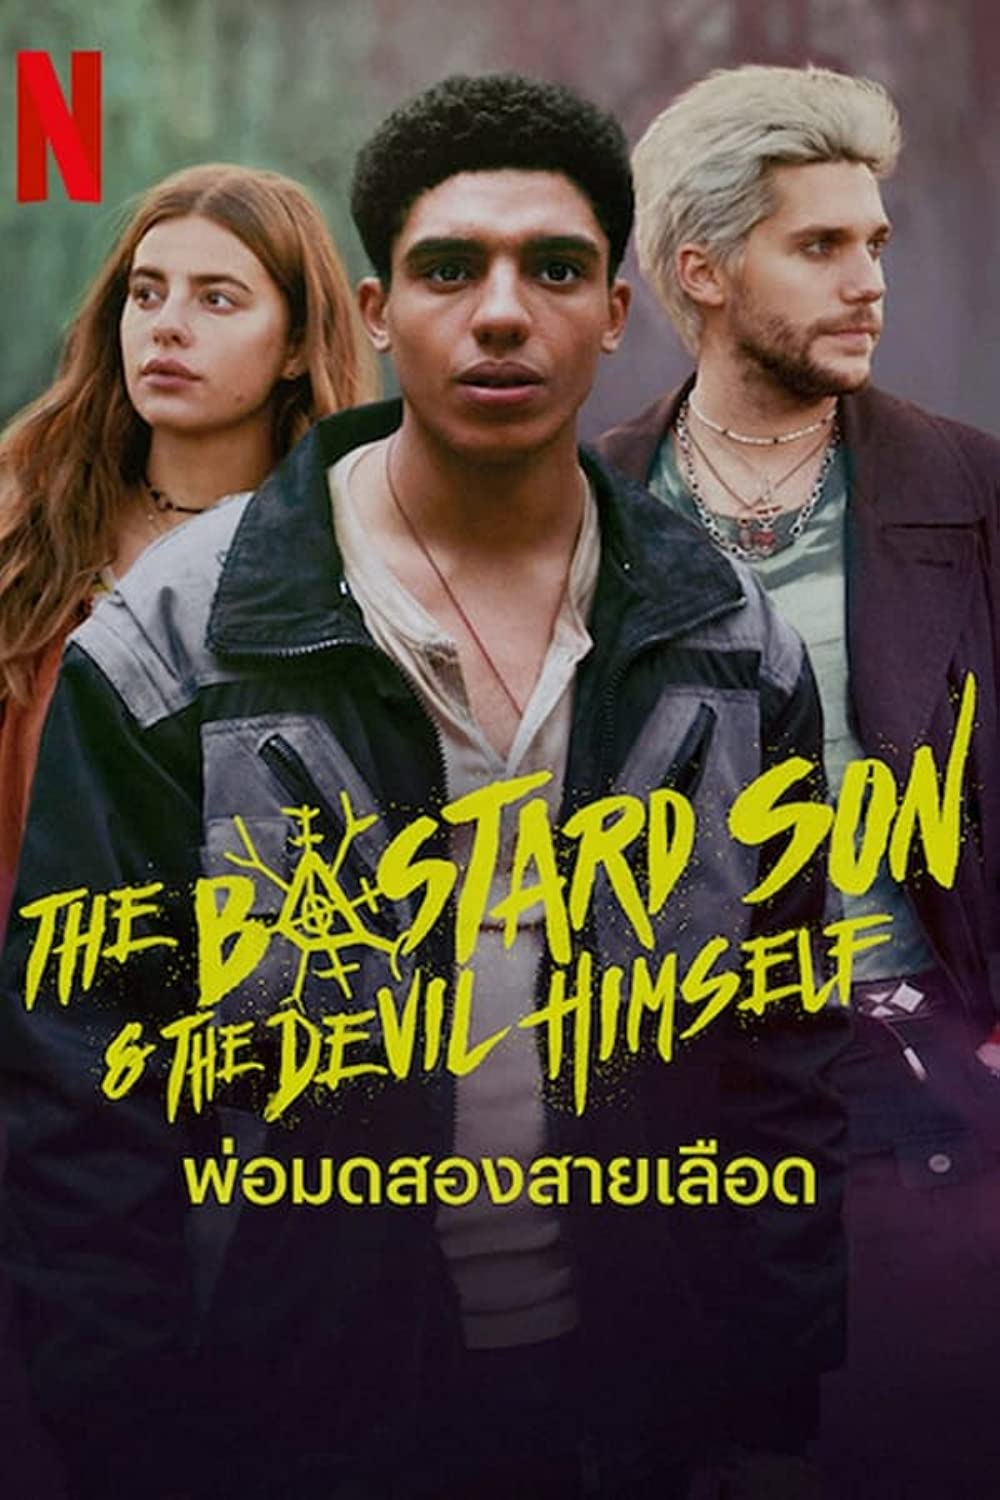 مسلسل The Bastard Son & The Devil Himself الموسم 1 الحلقة 7 مترجمة